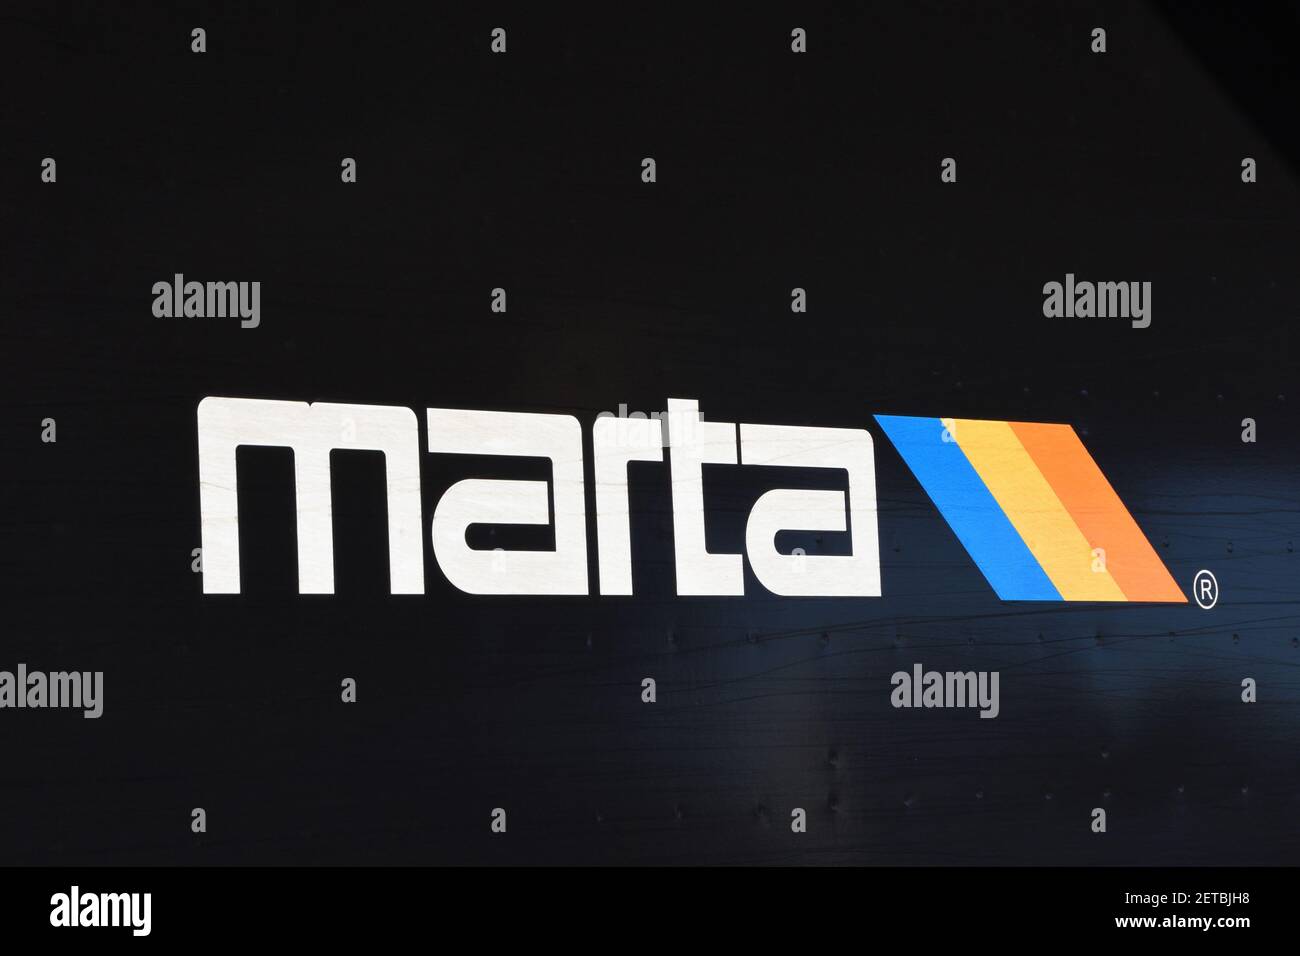 Marta train logo (Metropolitan Atlanta Rapid Transit Authority), Atlanta, Georgia, USA. Black background. Stock Photo